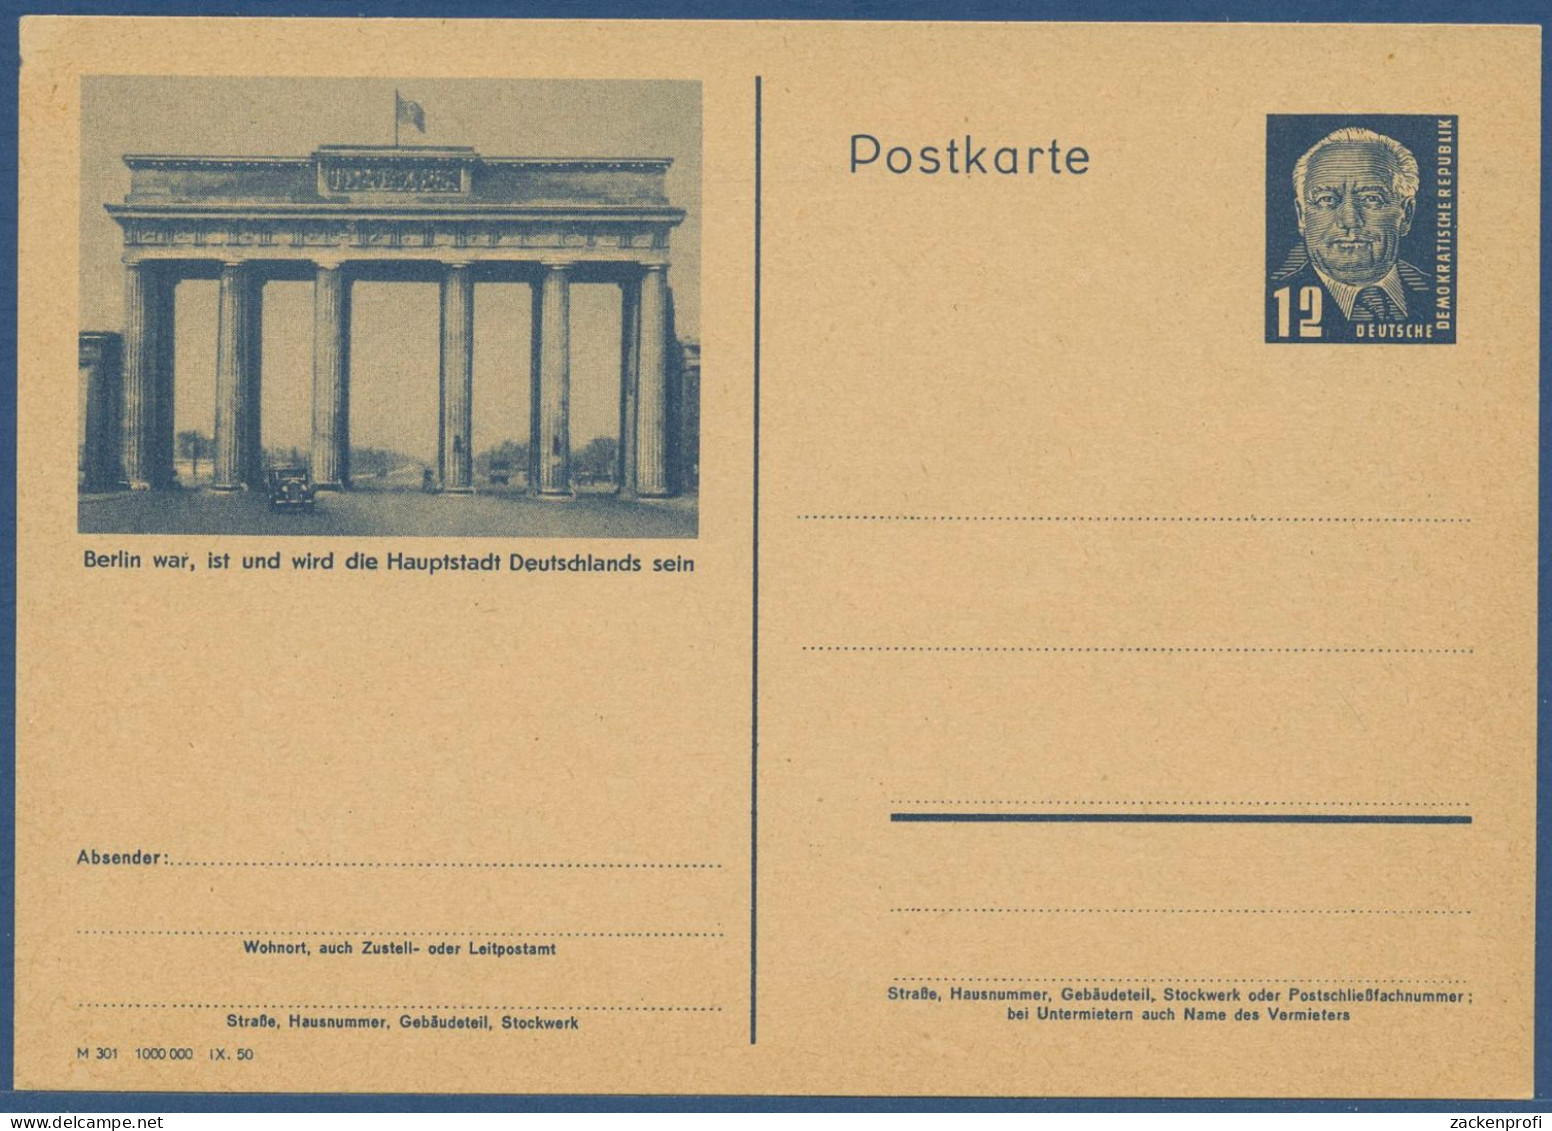 DDR 1950 Wilh. Pieck Bildpostkarte Brandenburger Tor P 47/01 Ungebraucht (X40942) - Postcards - Mint